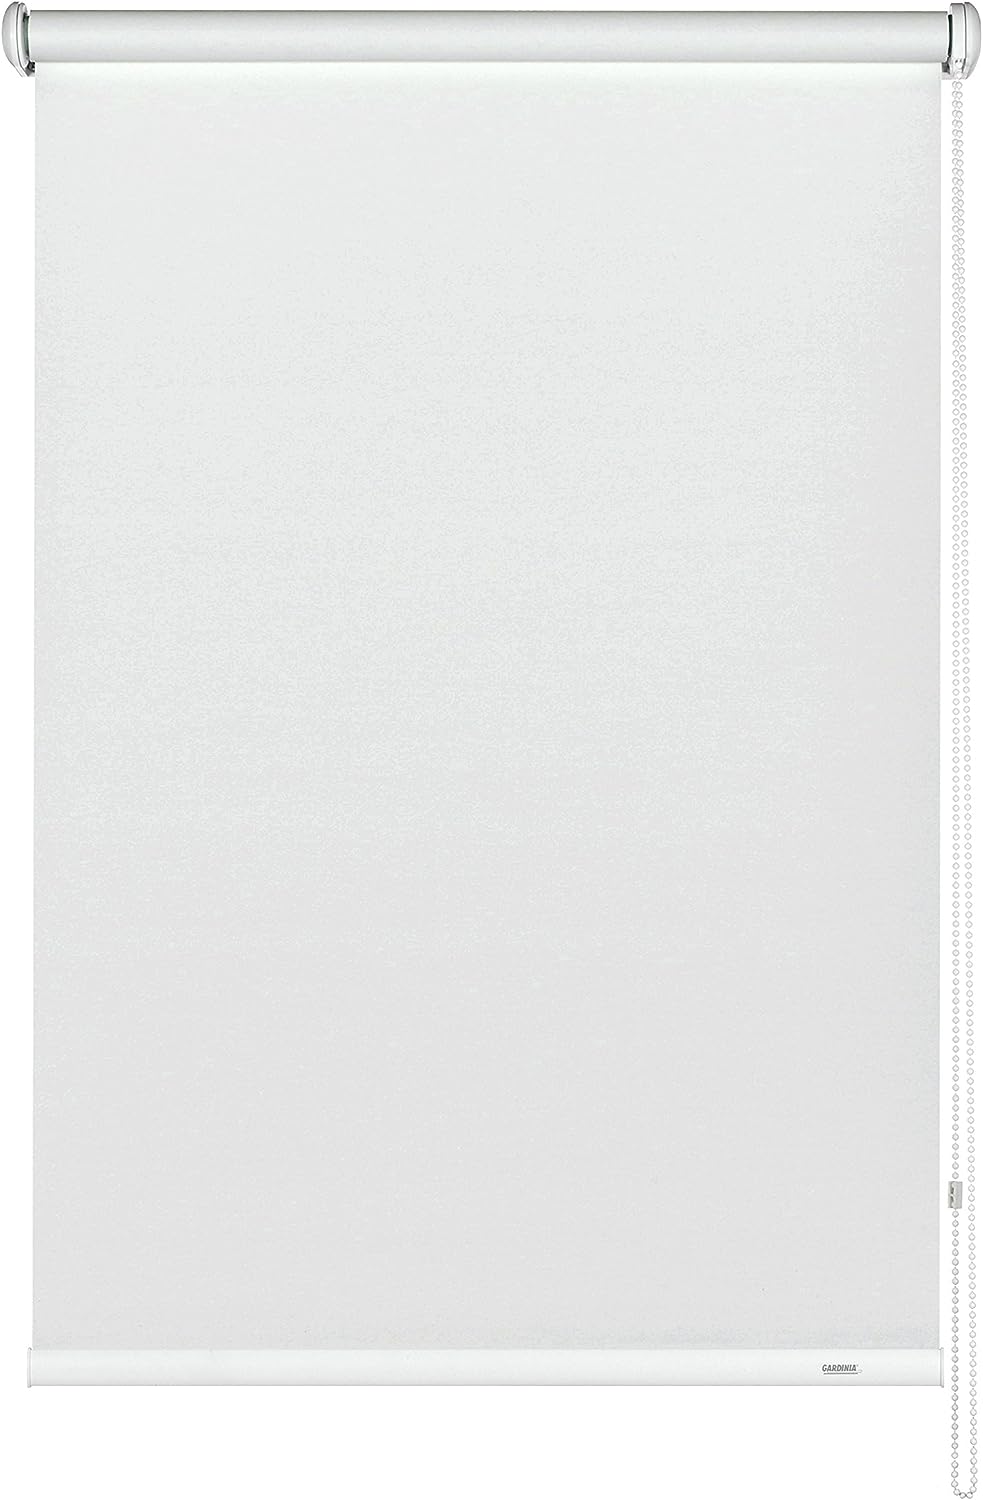 GARDINIA Seitenzug-Rollo zum Abdunkeln, Decken-, Wand- oder Nischenmontage, Lichtundurchlässig, Alle Montage-Teile inklusive, Weiß, 102 x 180 cm (BxH)